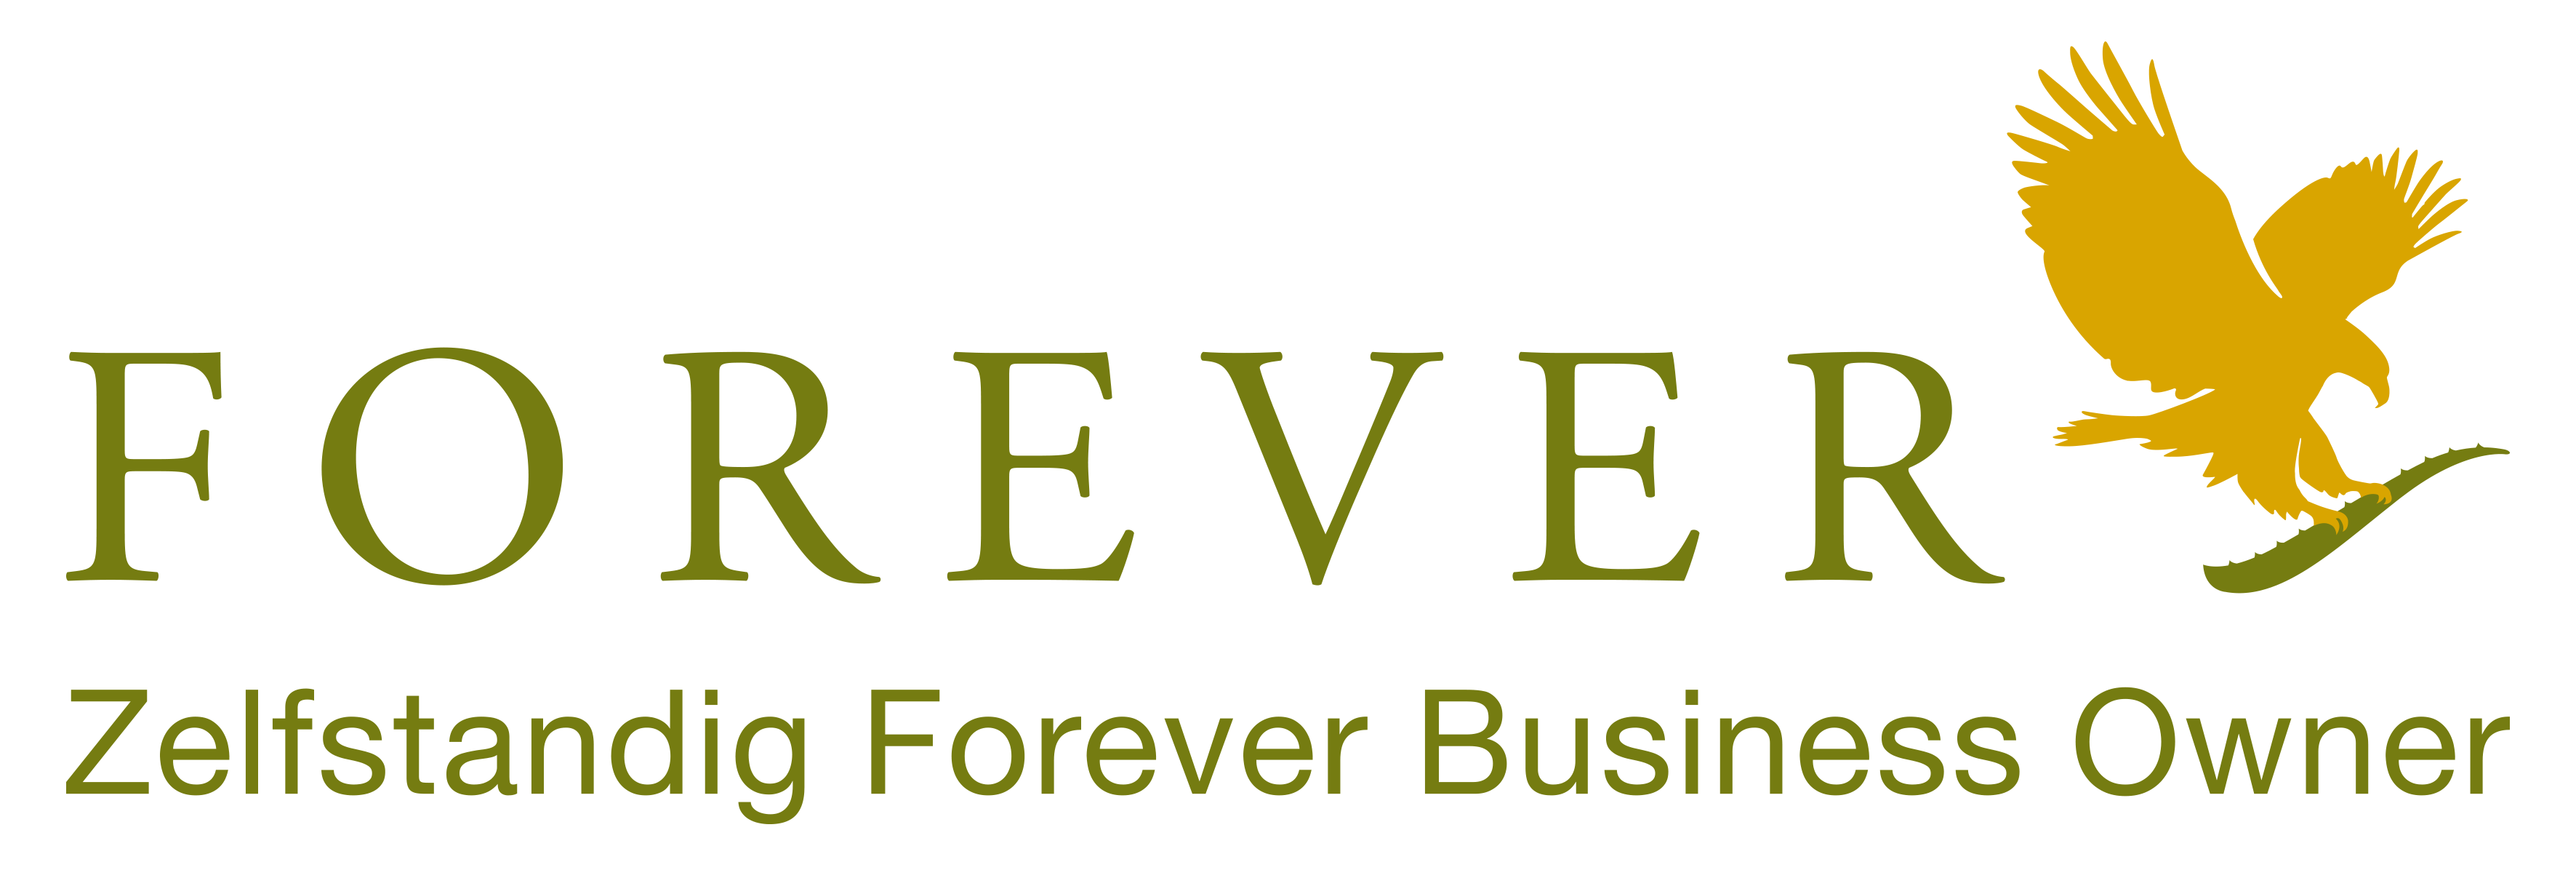 Forever Aloe vera fournit des produits Forever à des clients au Benelux et en France en tant qu'entrepreneur indépendant pour Forever Living. Achetez vos produits sur Forever Living en Belgique, aux Pays-Bas, au Luxembourg et en France.